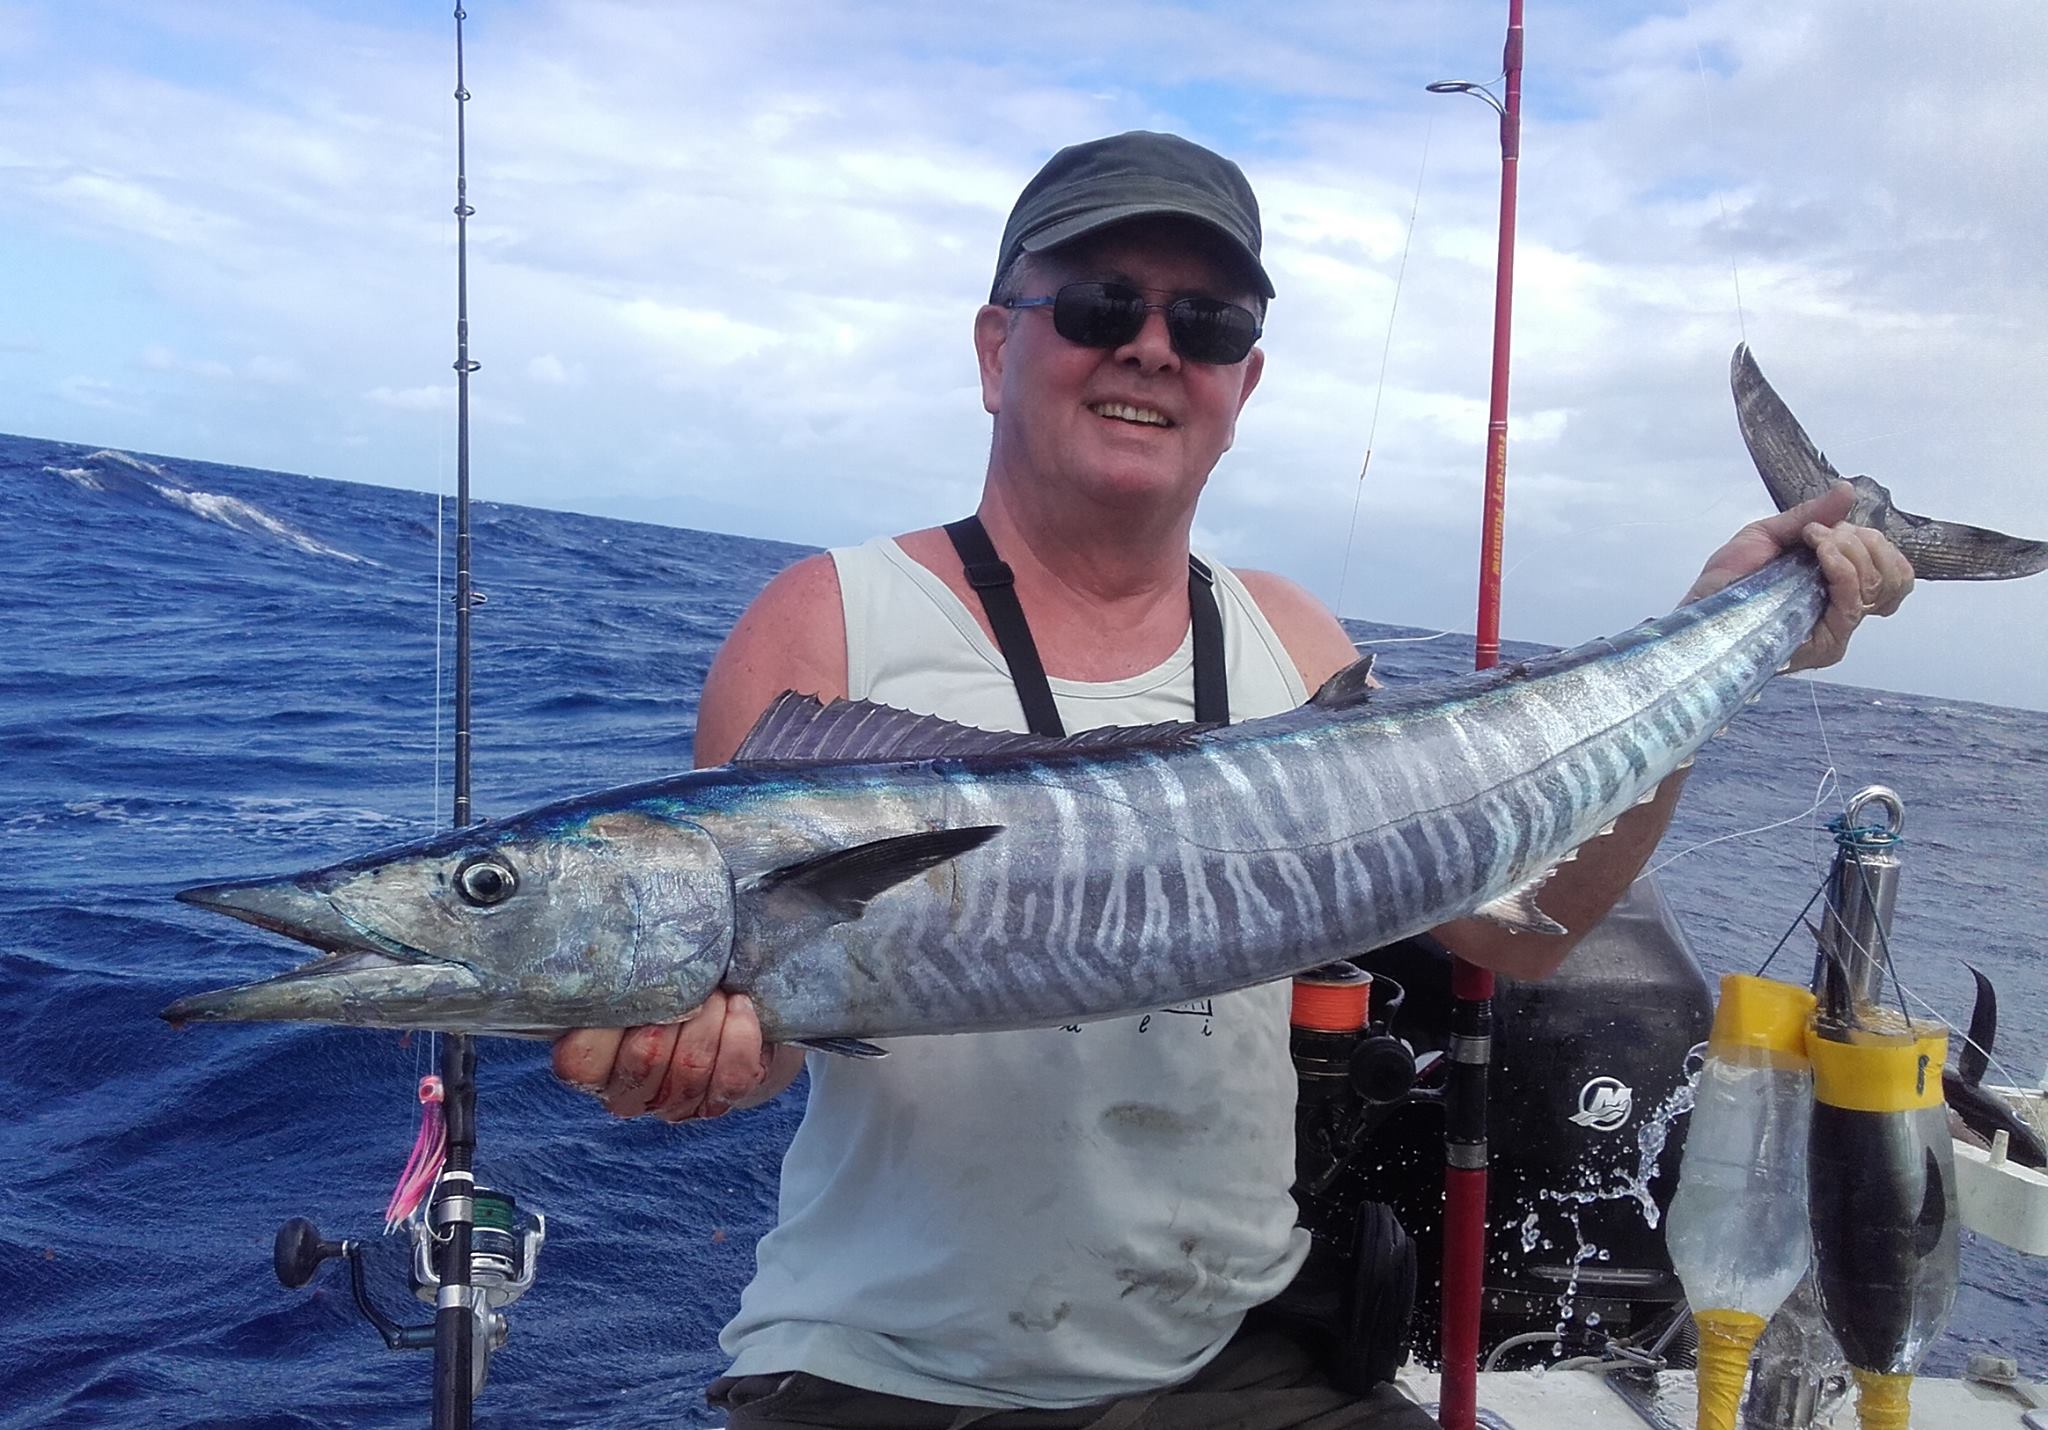 Le wahoo – Julien BROSSEL, Guide de pêche sportive en Guadeloupe